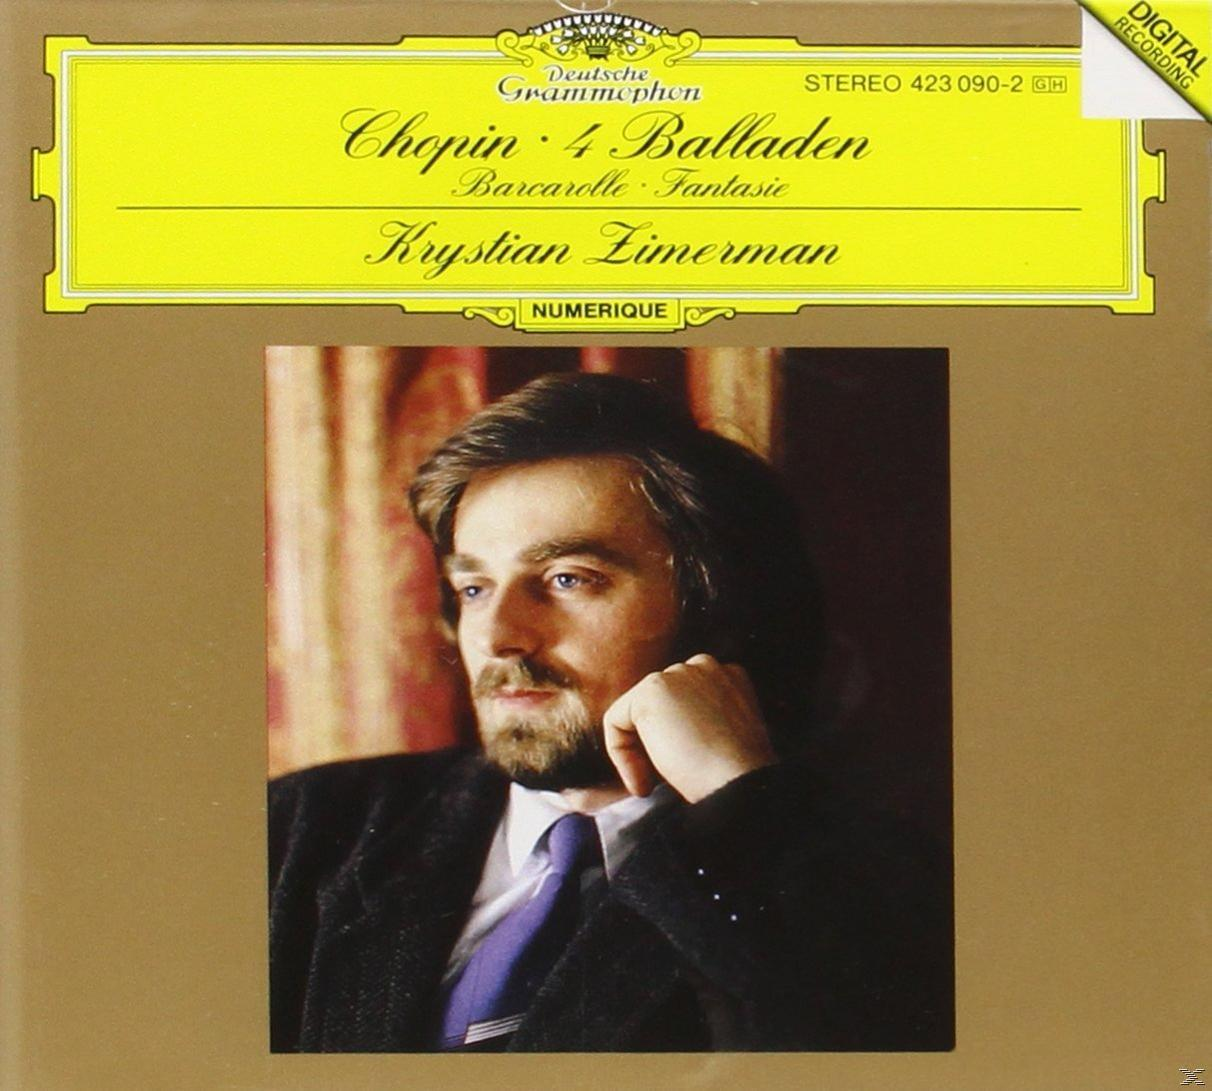 Zimerman Krystian - (Vinyl) 1-4,Barcarolle,Fantasia Ballades 